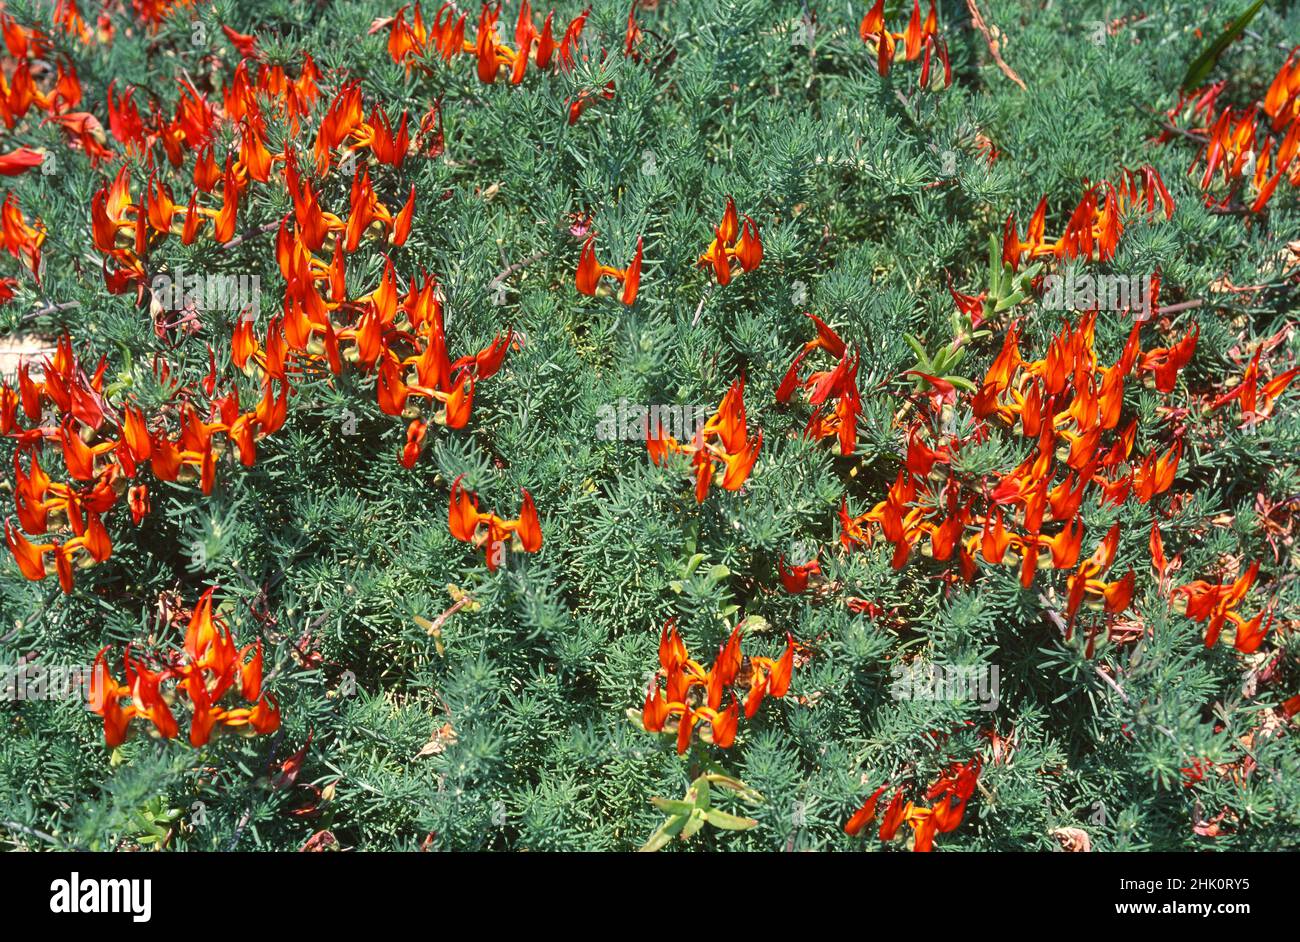 Picopaloma, pico de loro o gema de coral (Lotus berthelotii) es una hierba perenne postrada endémica de Tenerife, Islas Canarias, España. Flores de color naranja Foto de stock